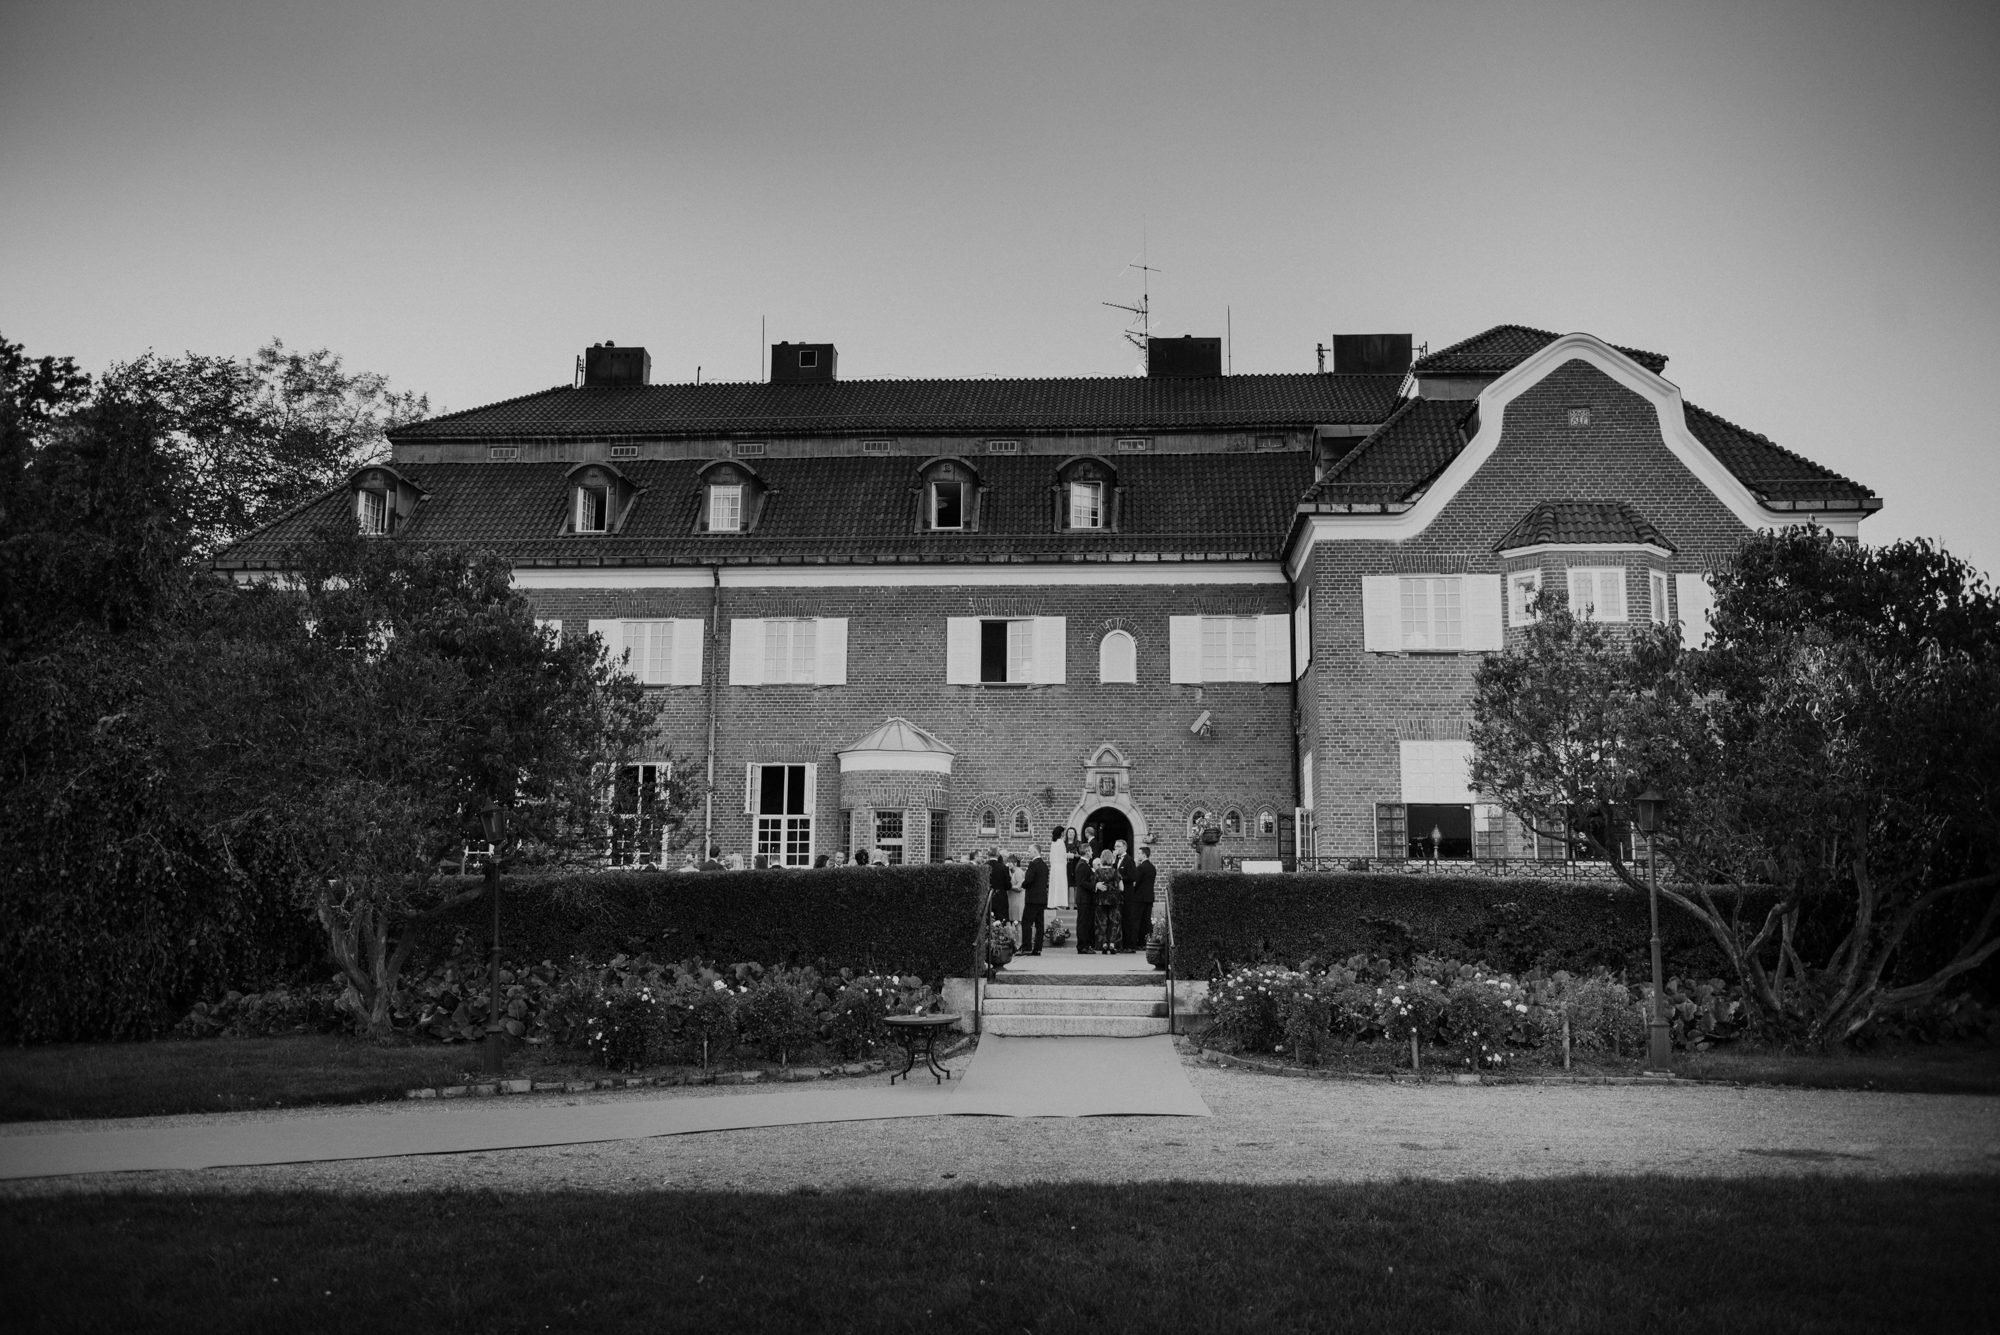 Pontus och Niklas höstbröllop på Villa Pauli i Djursholm